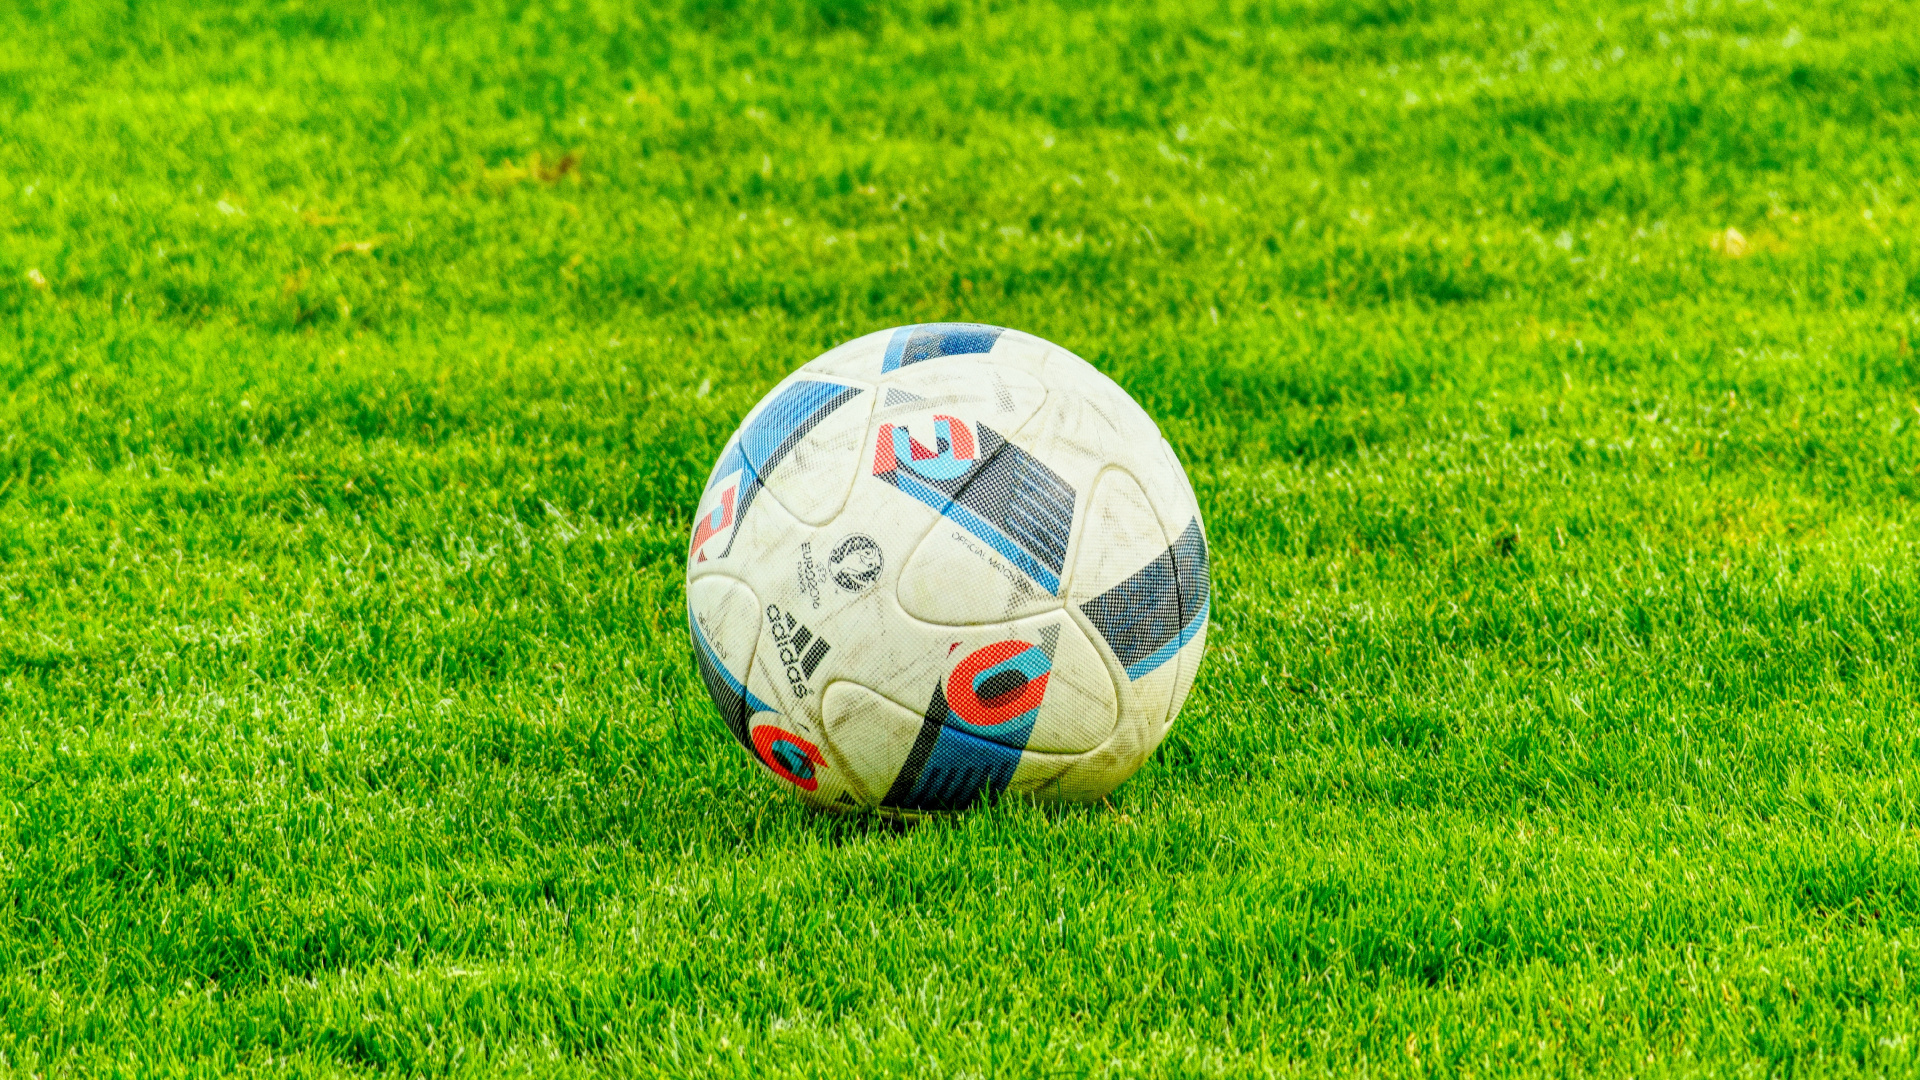 足球, 球, 草, 国际足球的规则, 气球 壁纸 1920x1080 允许